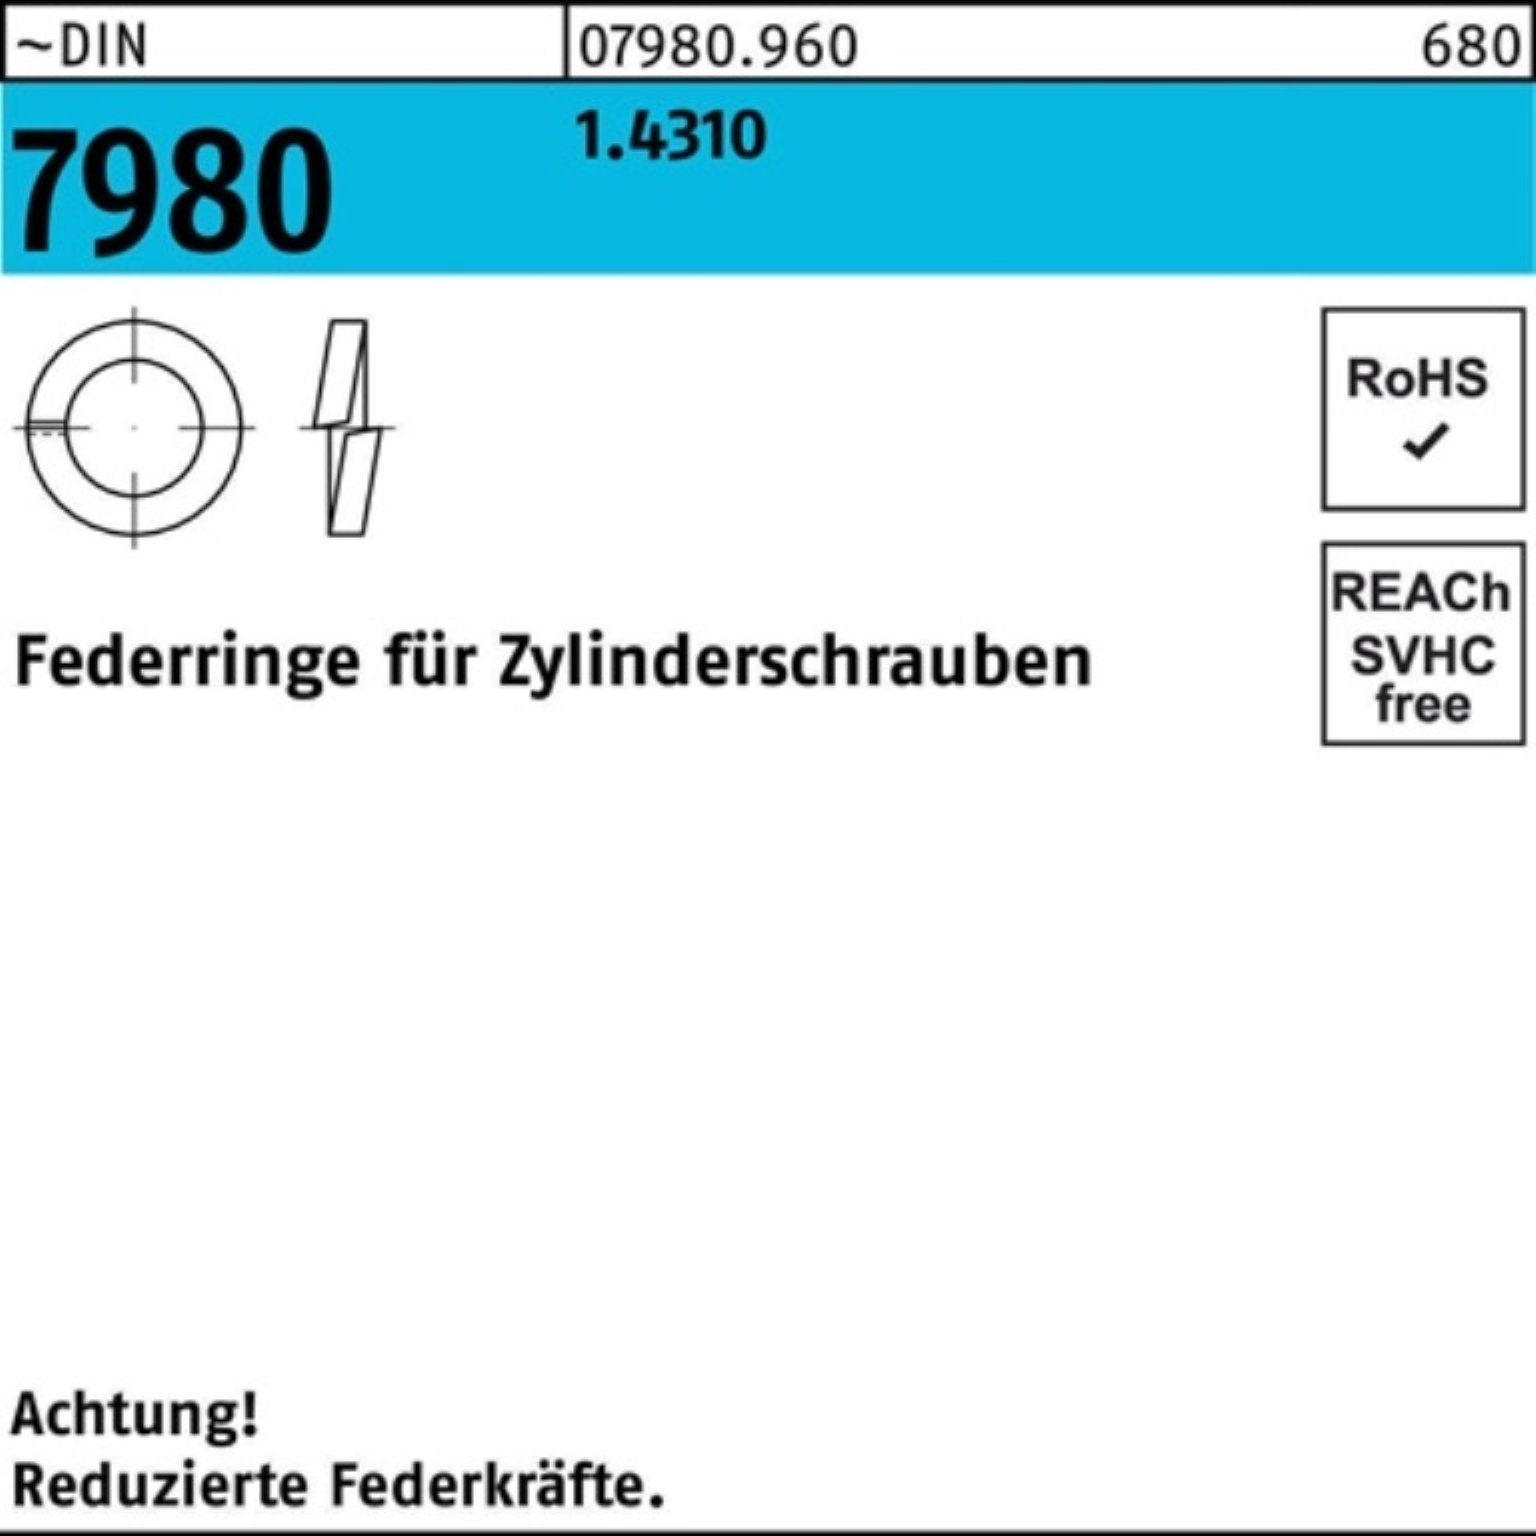 Reyher Zylinderschraube Federring 1.4310 DIN f.Zylinderschrauben Stück 7980 100 Pack 100er 4